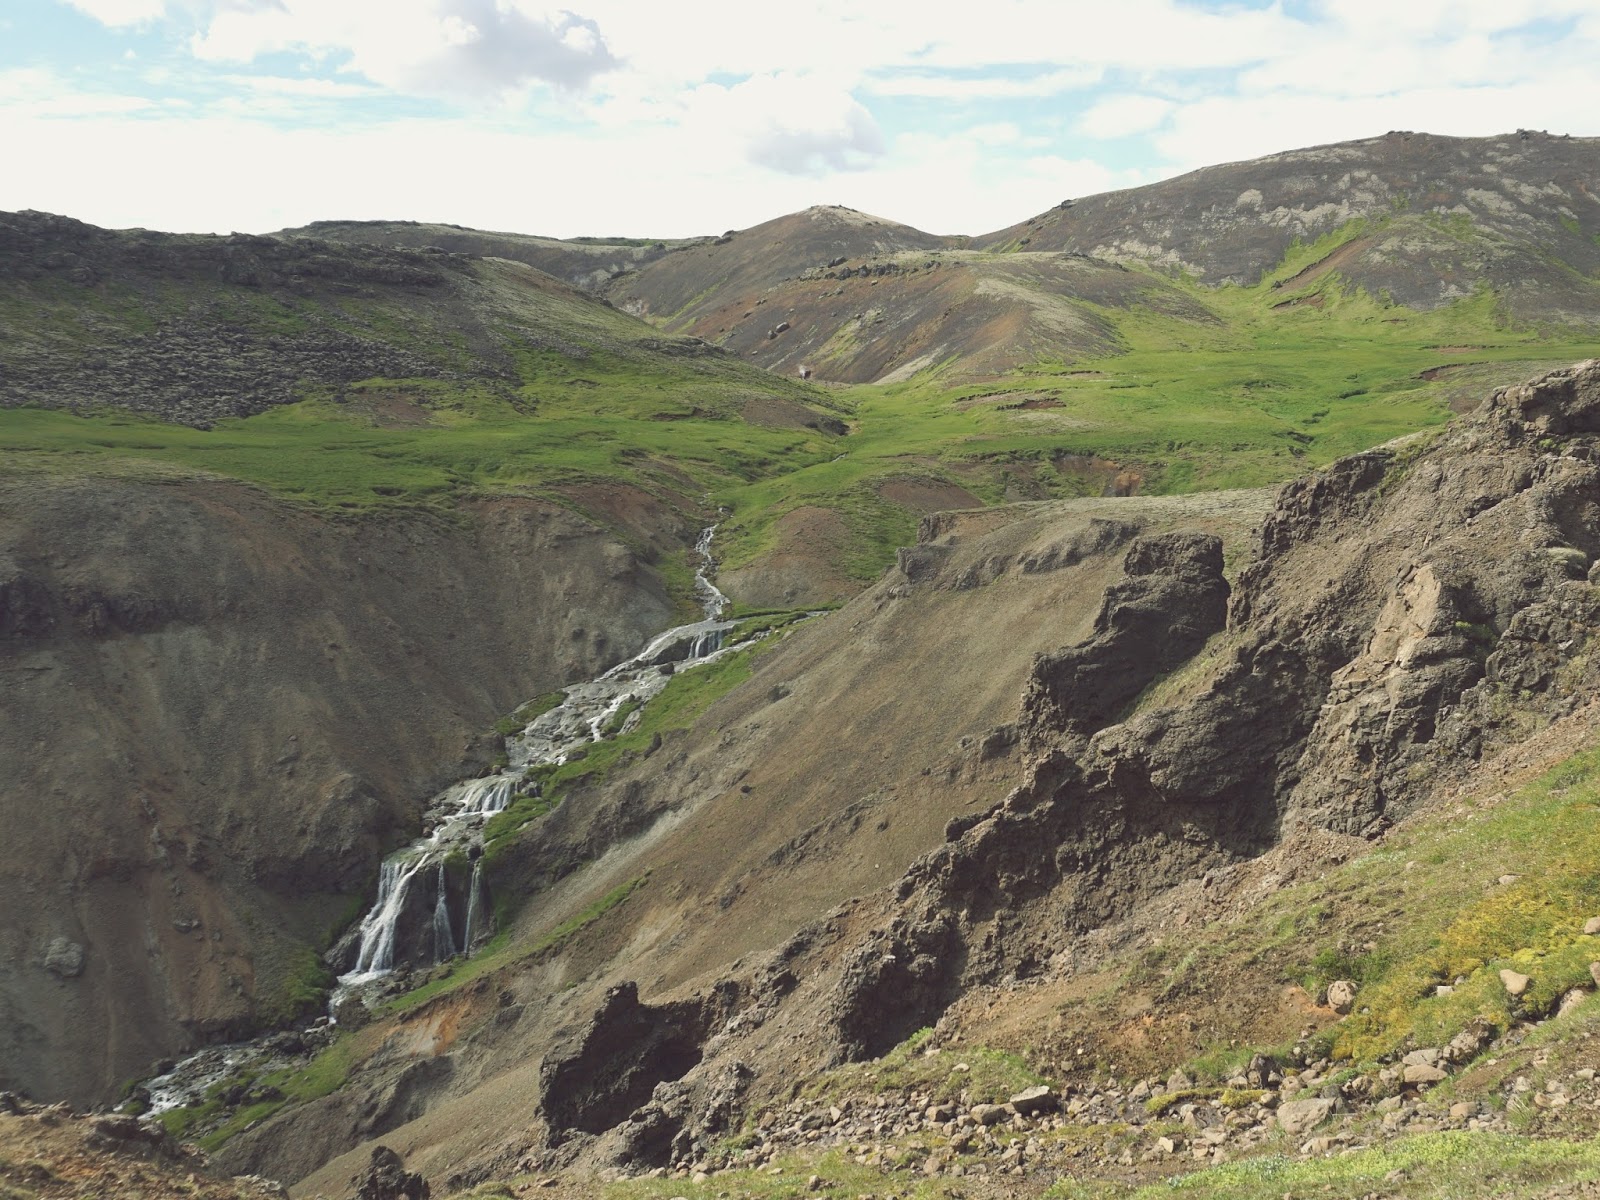 wodospad, Reykjadalur, Islandia, Południowa Islandia, panidorcia, blog, blog o Islandii, wakacje w Islandii, Islandia zwiedzanie, gorące źródła, pola geotermalne